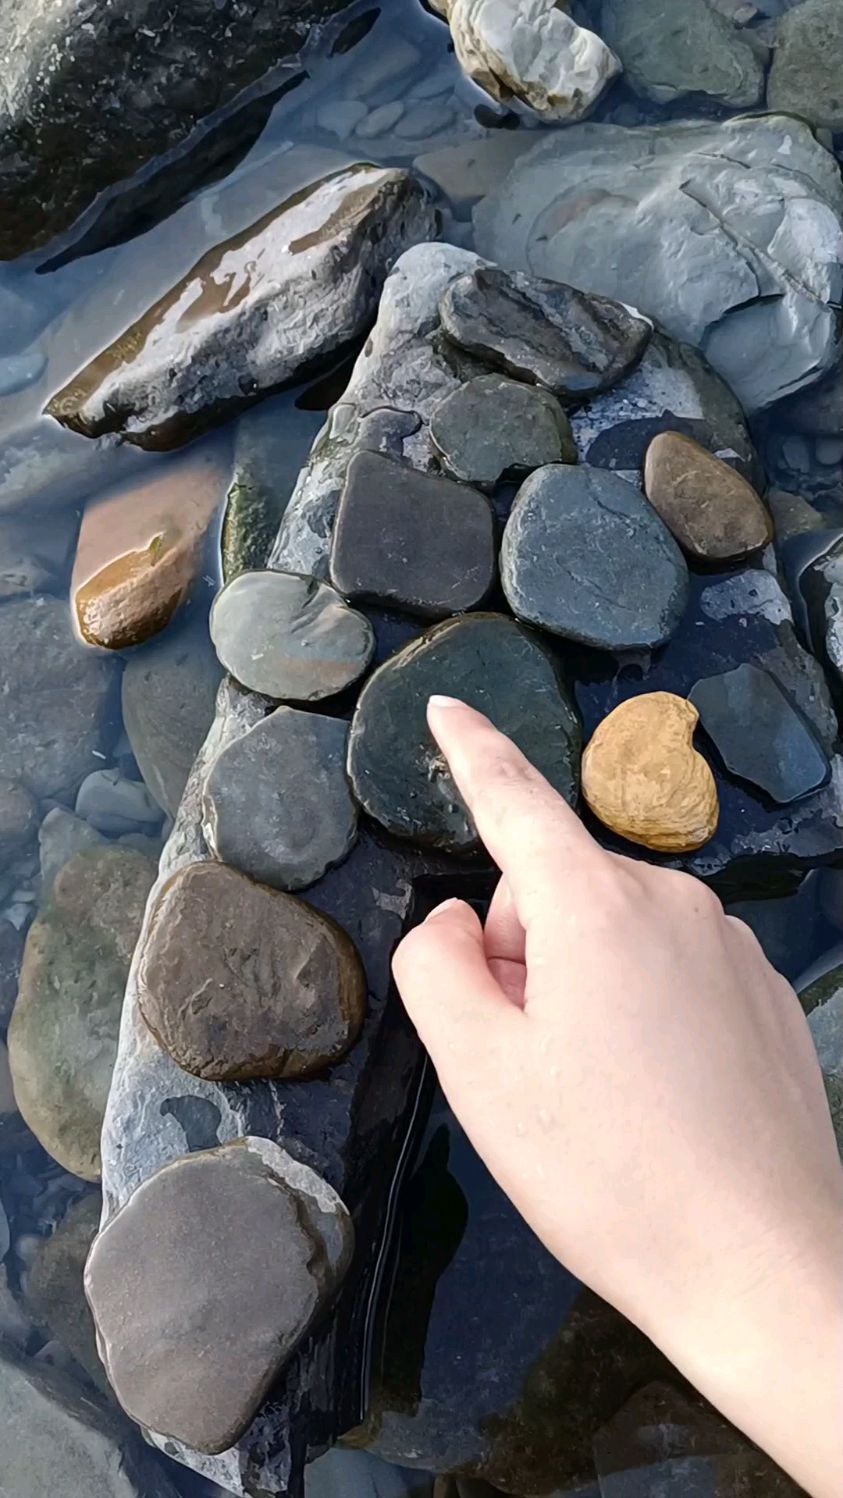 收集一些石头,来打水漂